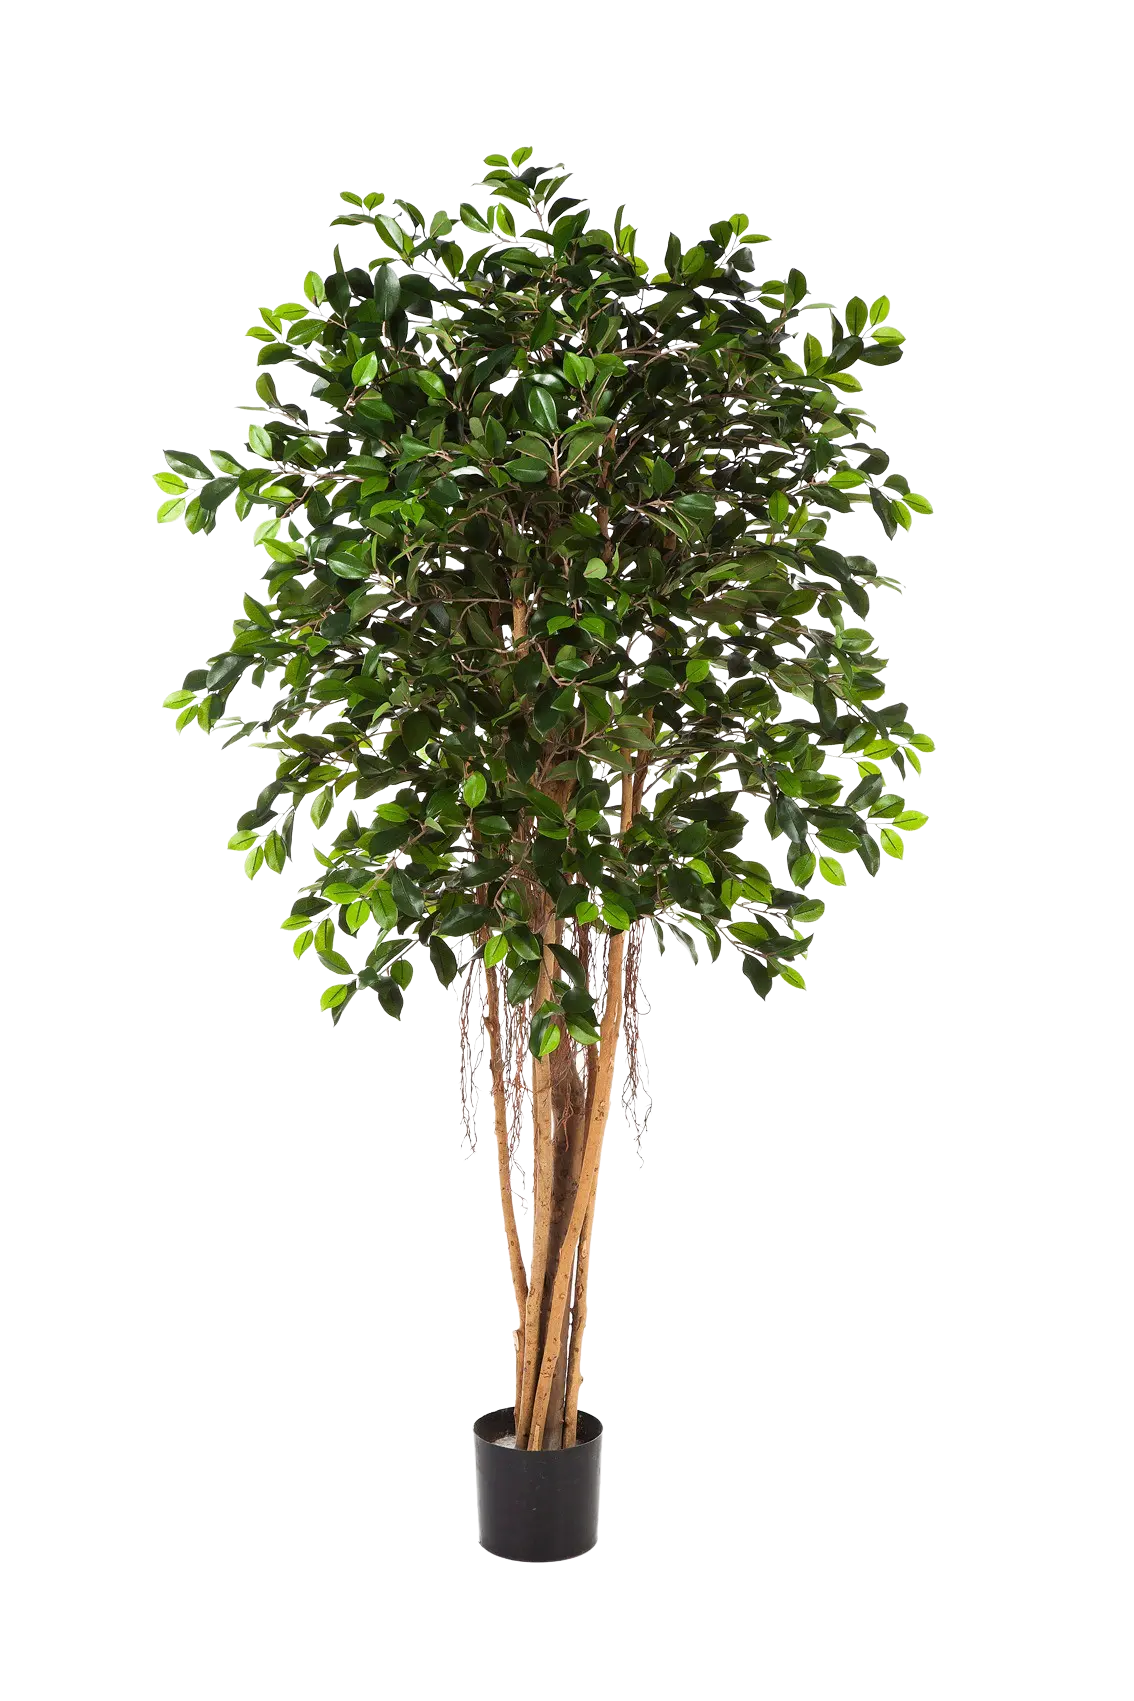 Künstlicher Chinesischer Ficus - Konstantin auf transparentem Hintergrund mit echt wirkenden Kunstblättern. Diese Kunstpflanze gehört zur Gattung/Familie der "Feigen" bzw. "Kunst-Feigen".